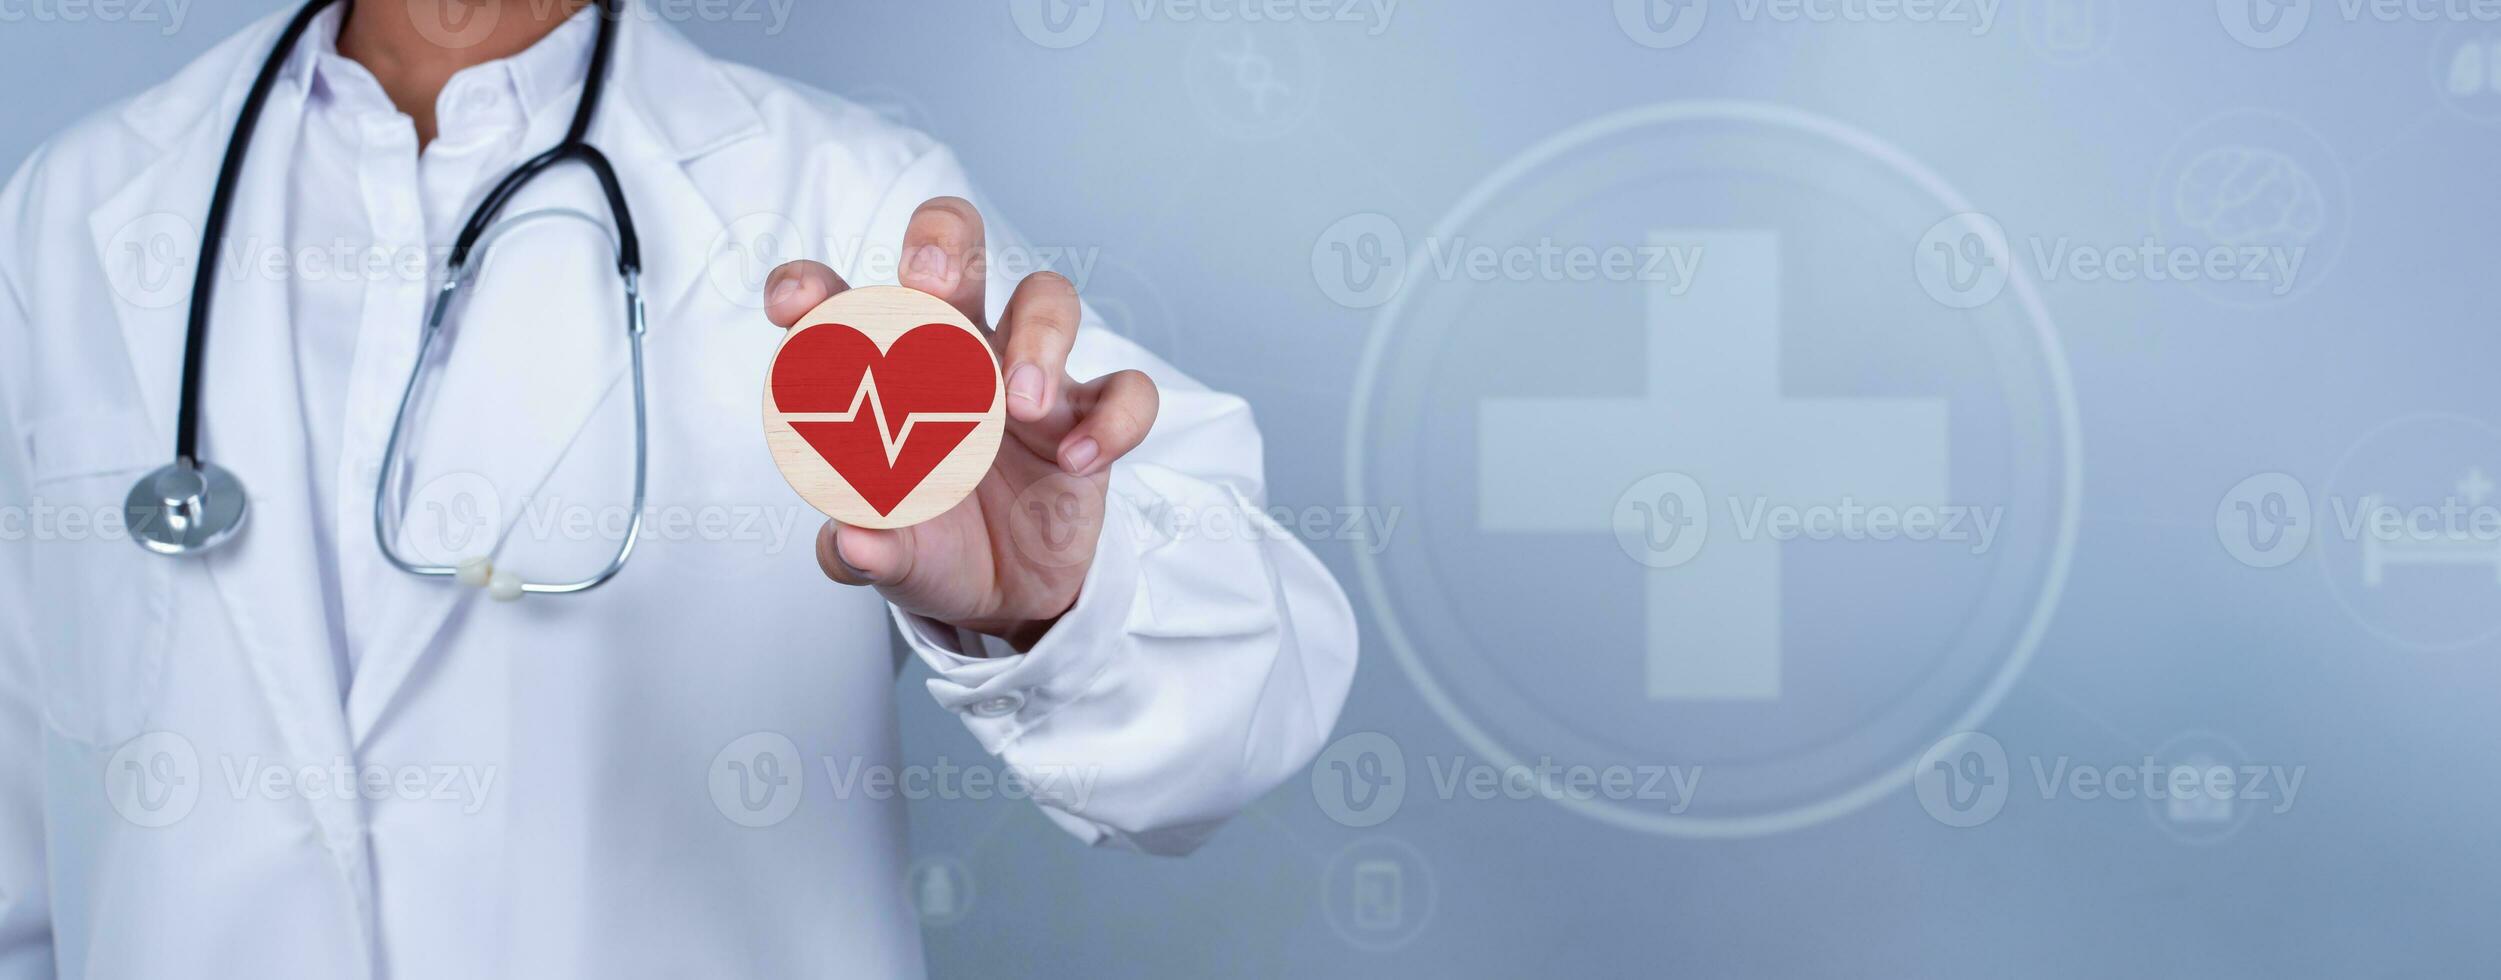 läkare som visar cirkel trä planka och röd hjärta representerar medicinsk hälsa vård och läkare personal service begrepp. foto